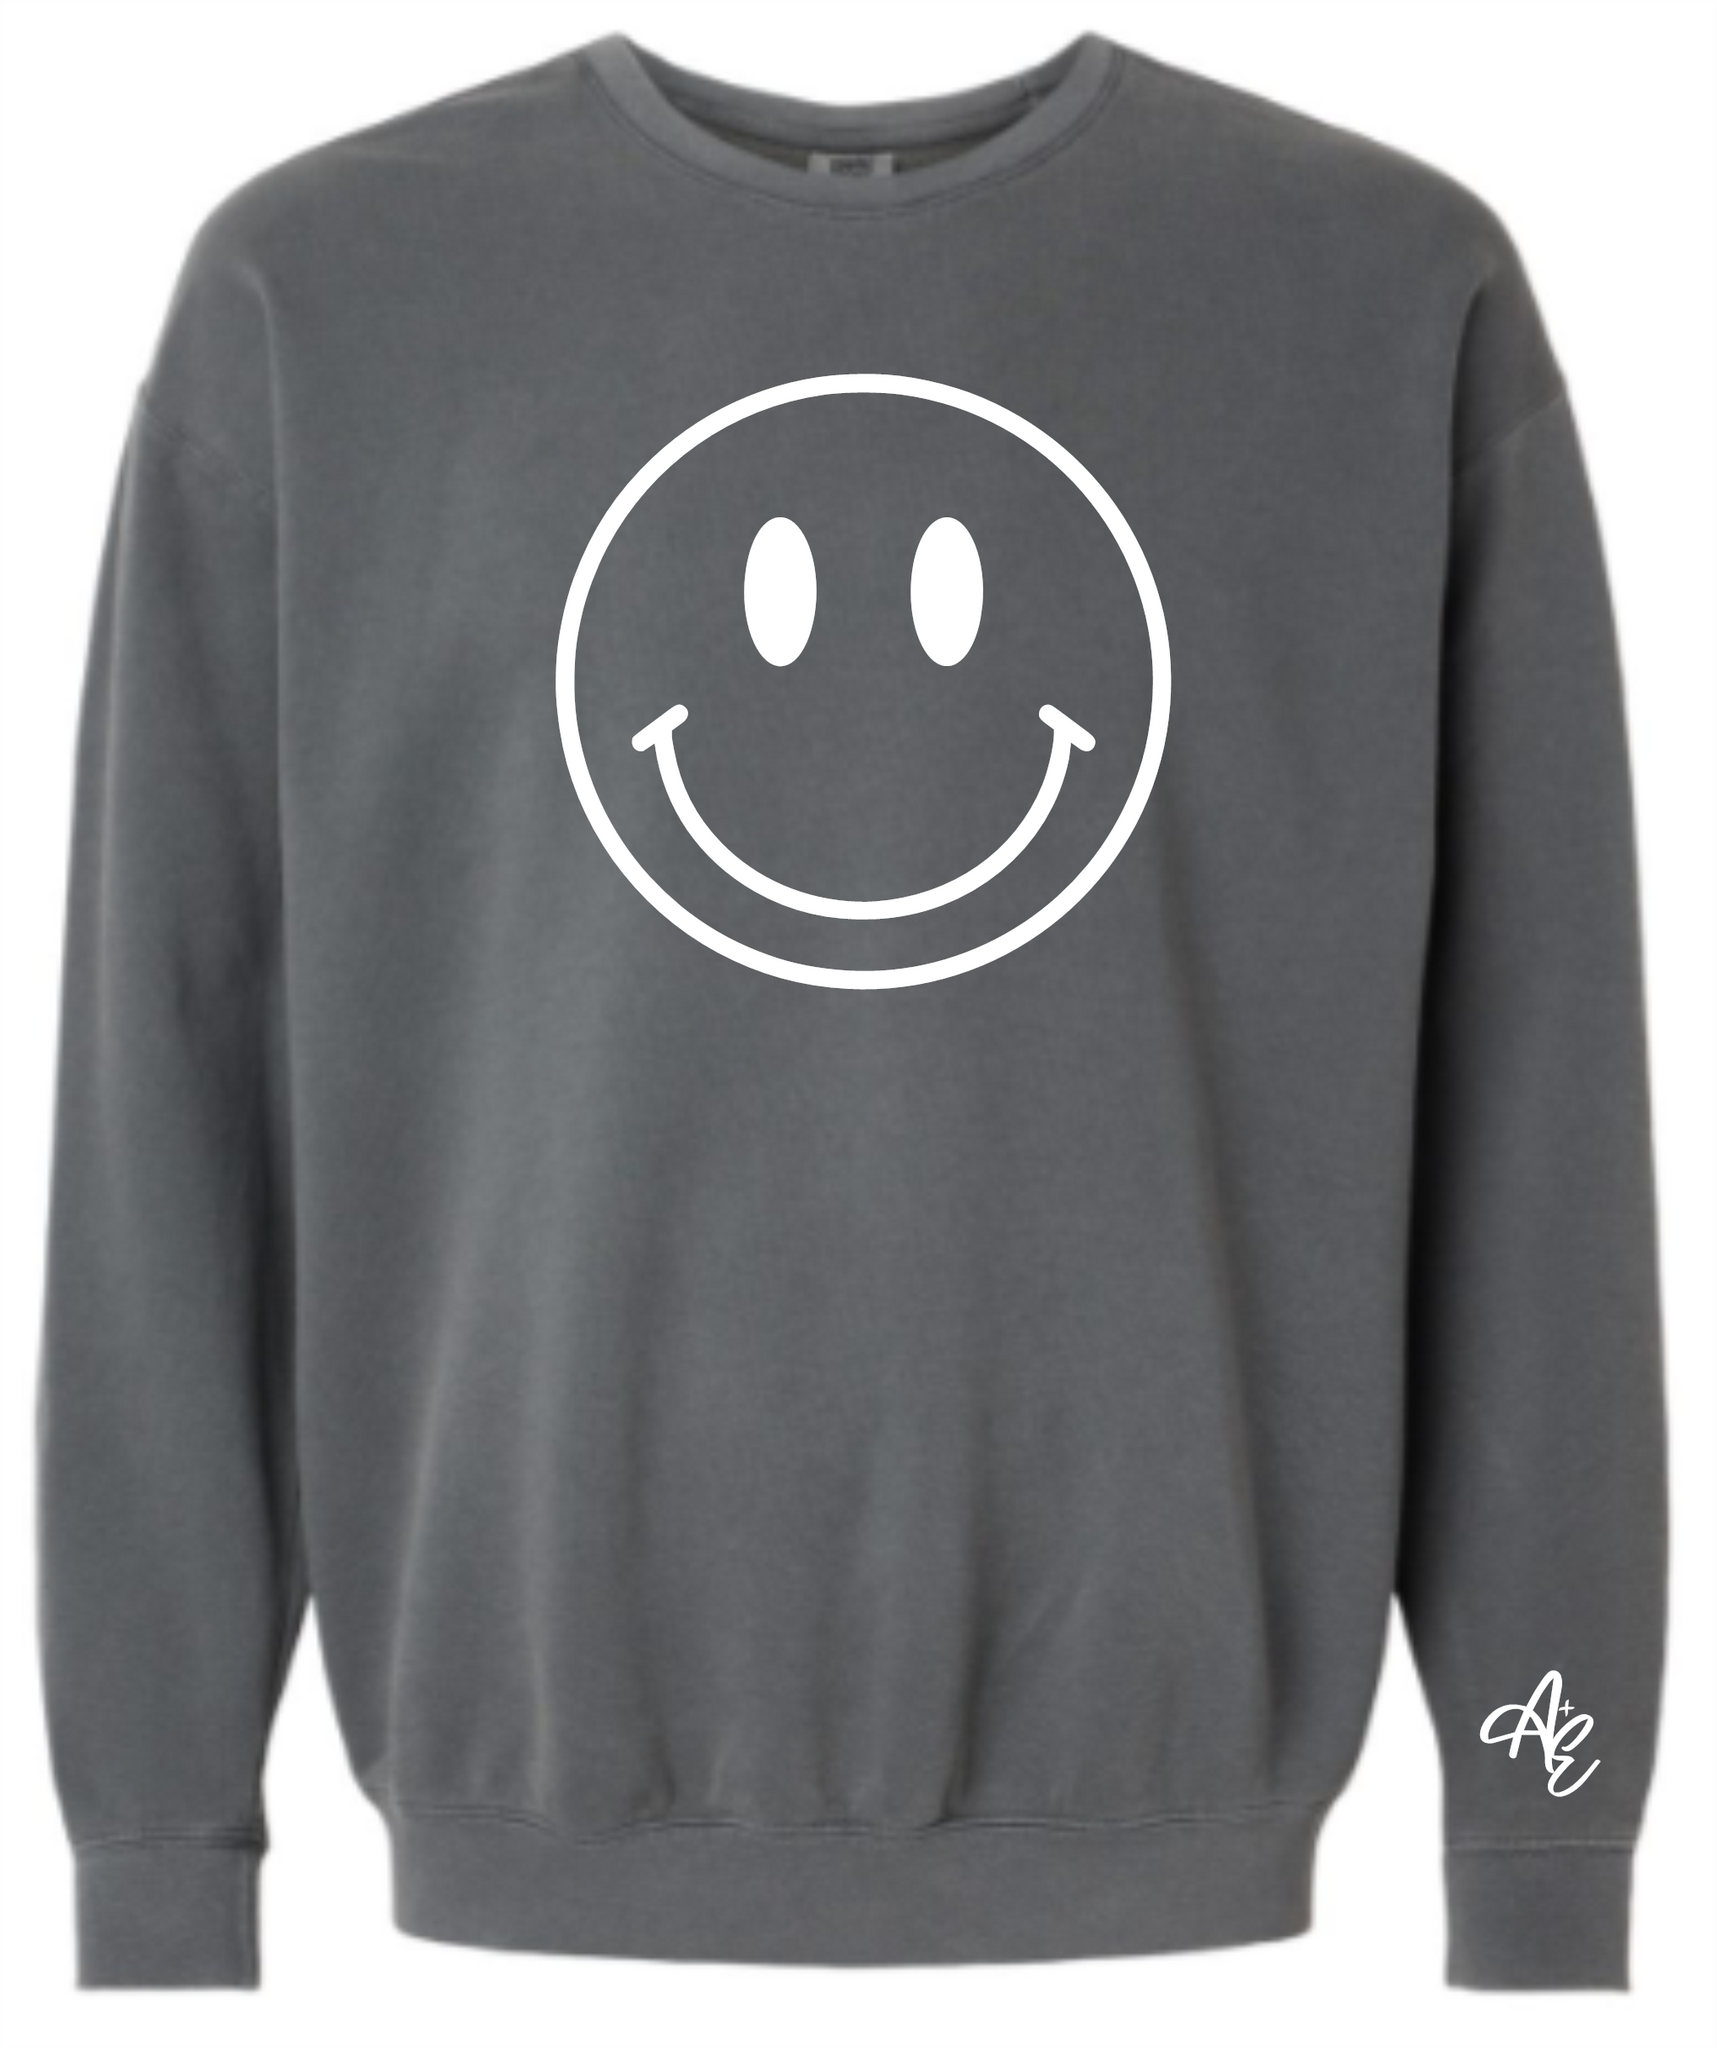 Giant Smiley Face Crewneck Sweatshirt - A+E - Casual Envy Apparel 